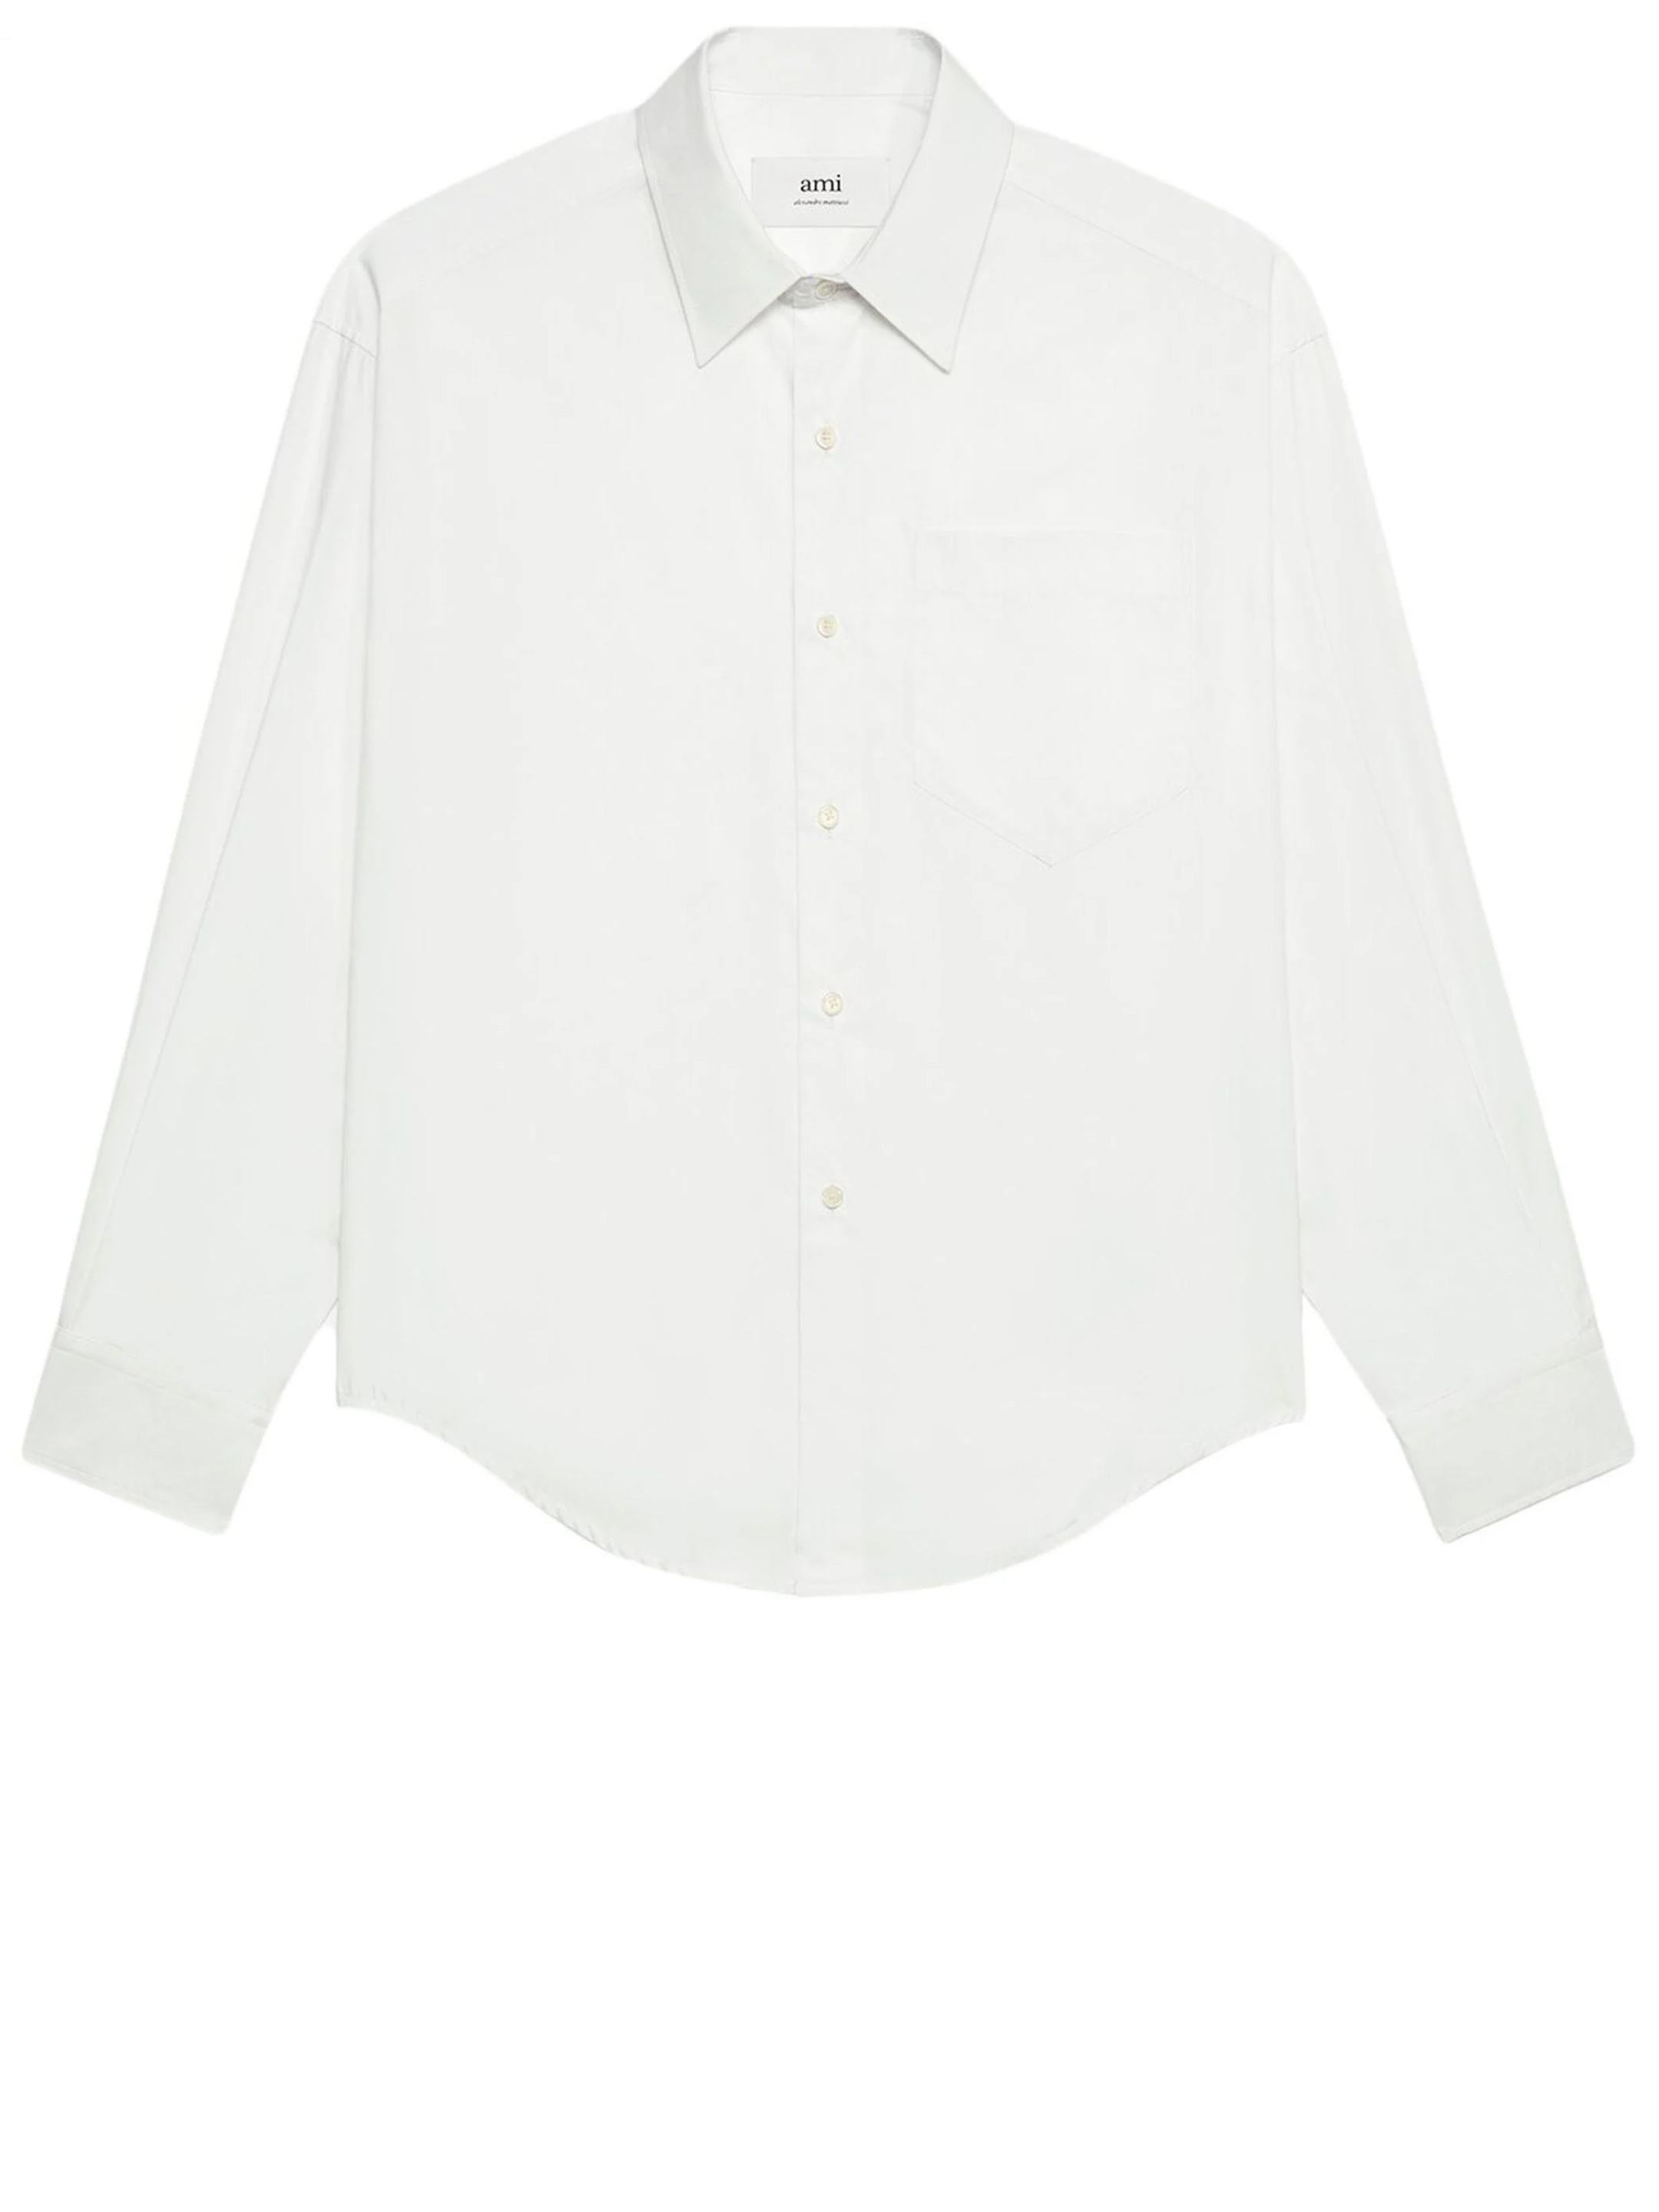 Рубашка Ami Paris Cotton poplin, белый футболка cotton shirt ami paris белый